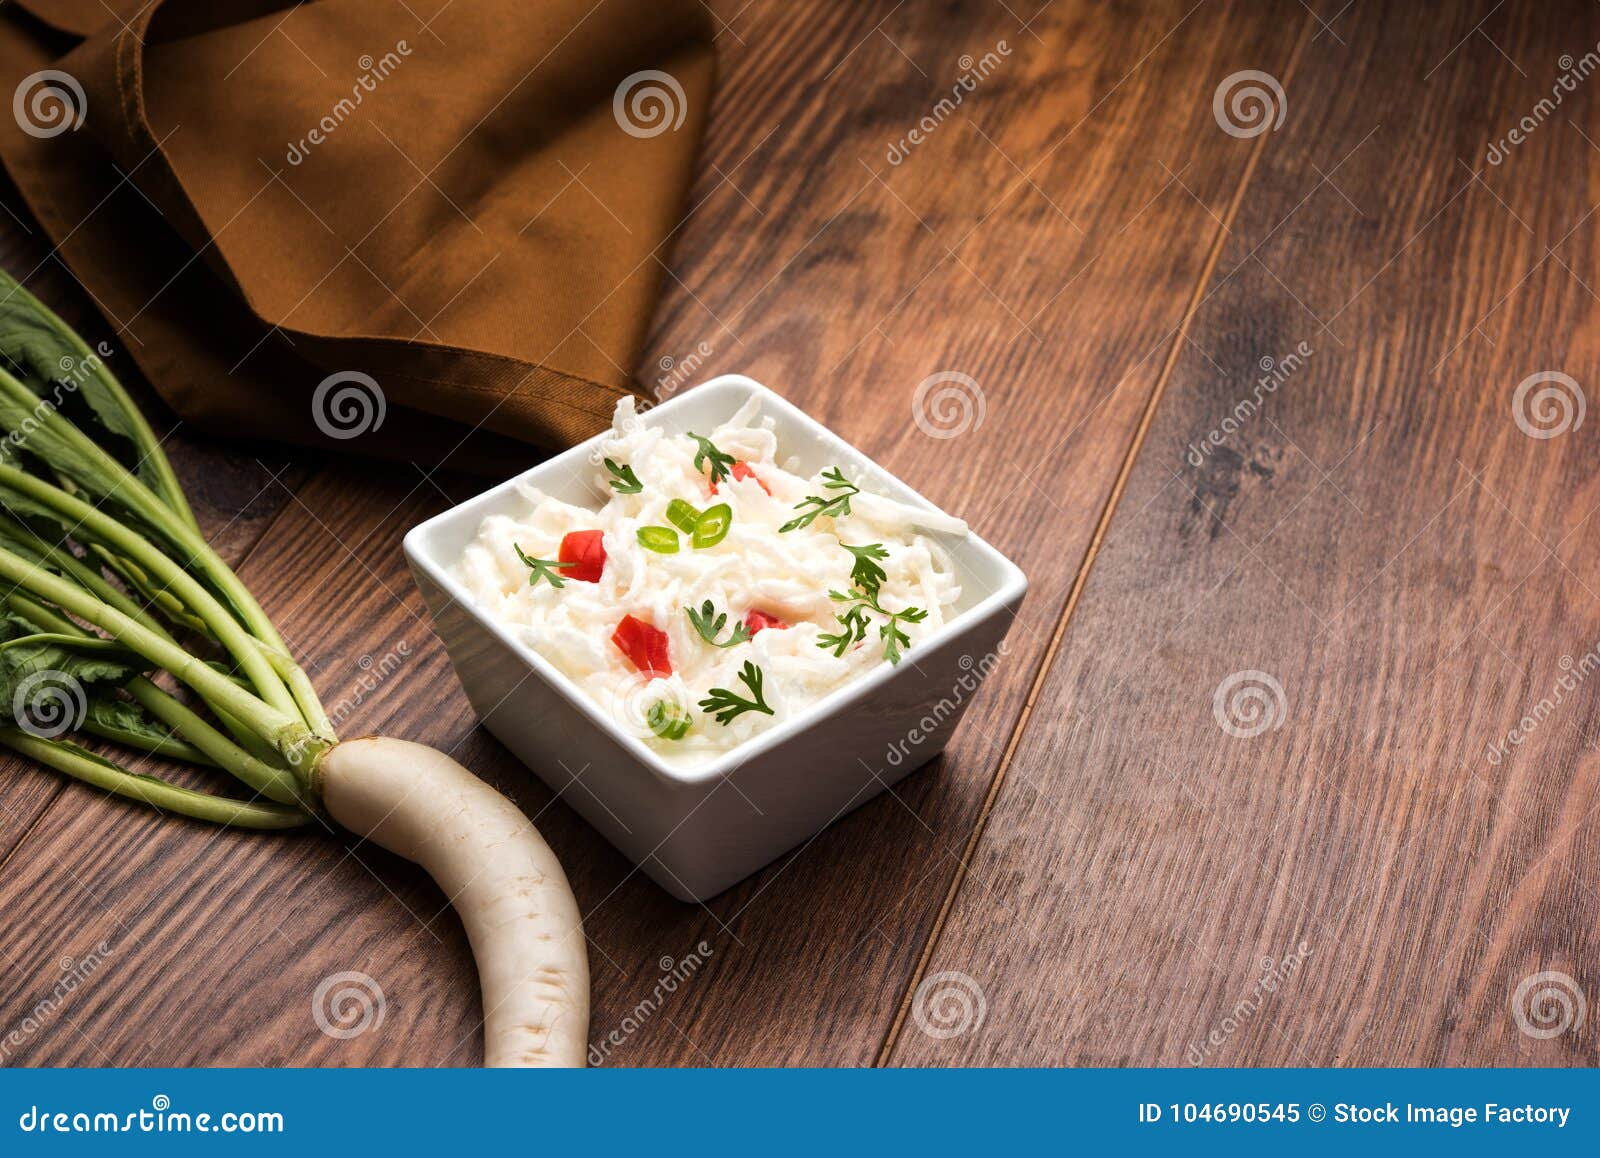 Rettich Raita/daikon Oder Mooli Koshimbir/Salat Stockbild - Bild von ...